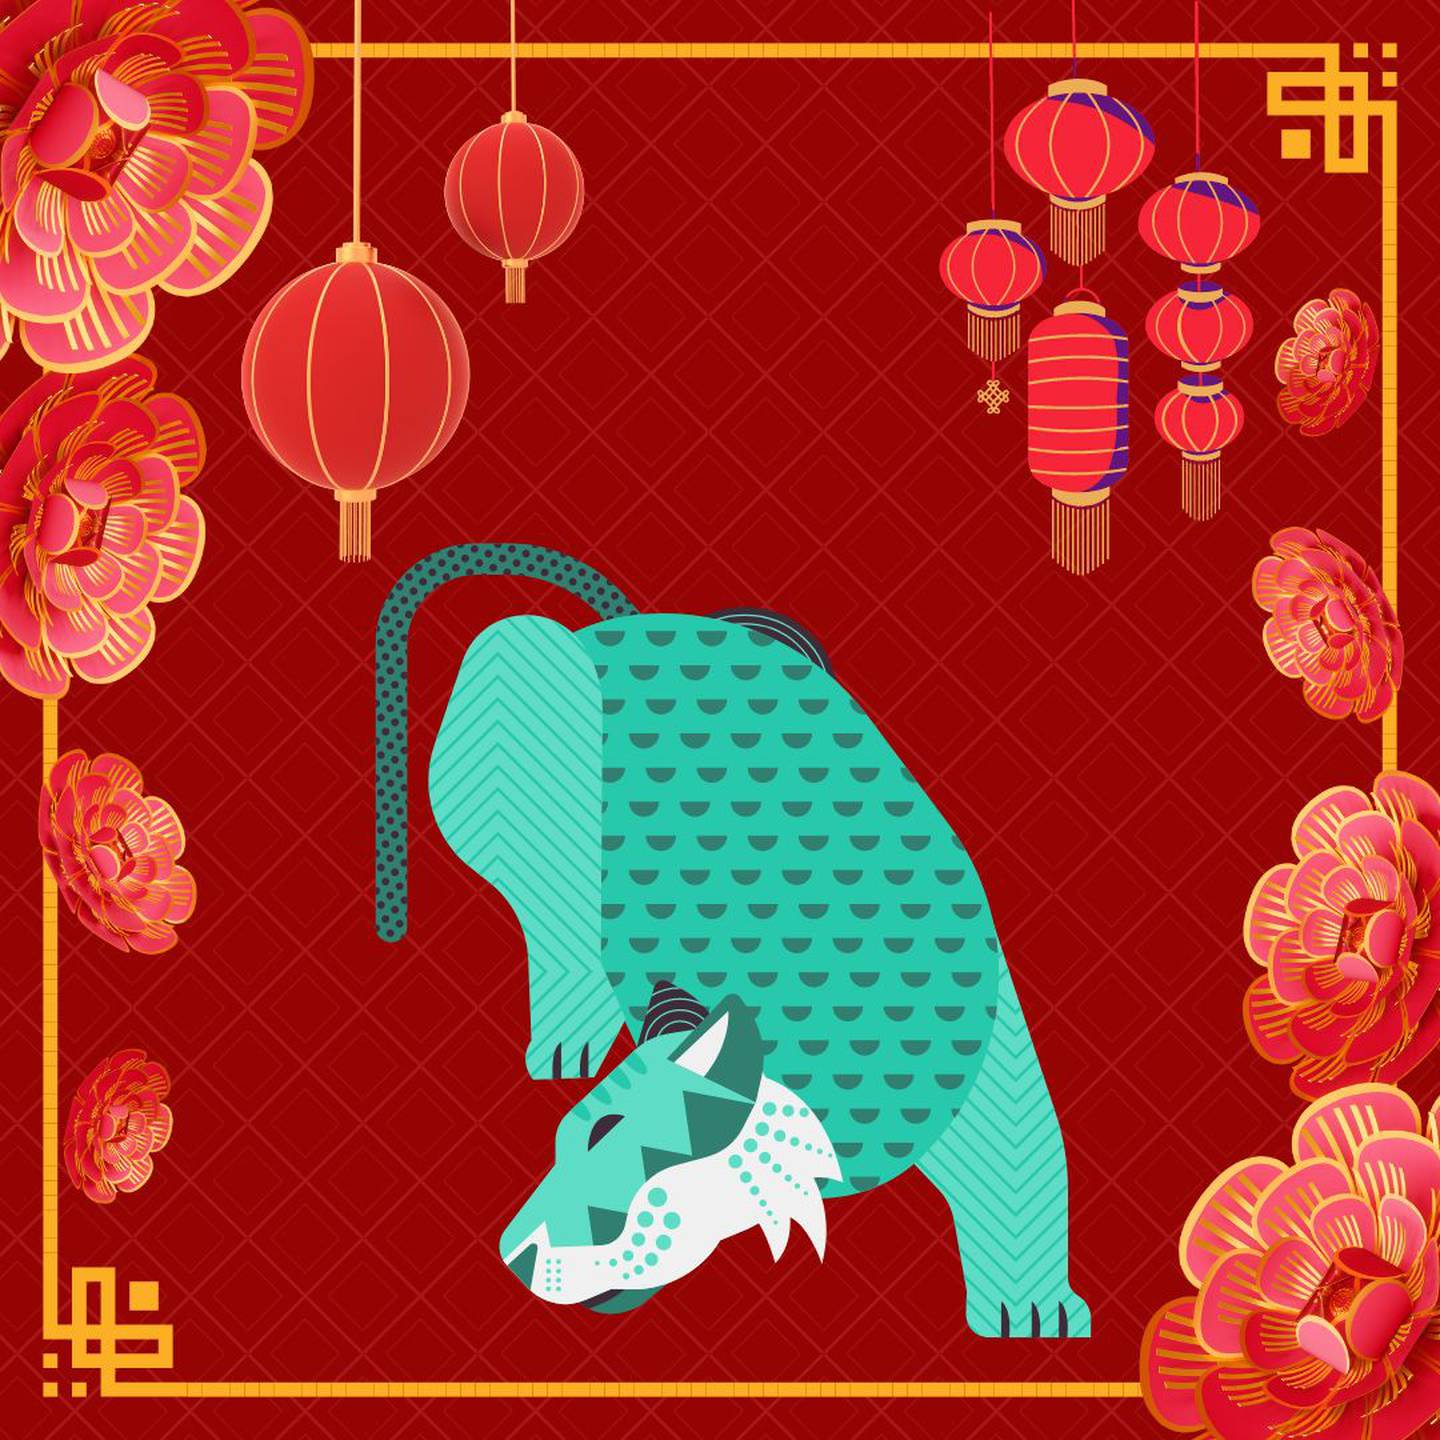 Caricatura de un tigre sobre un fondo rojo con motivos decorativos orientales